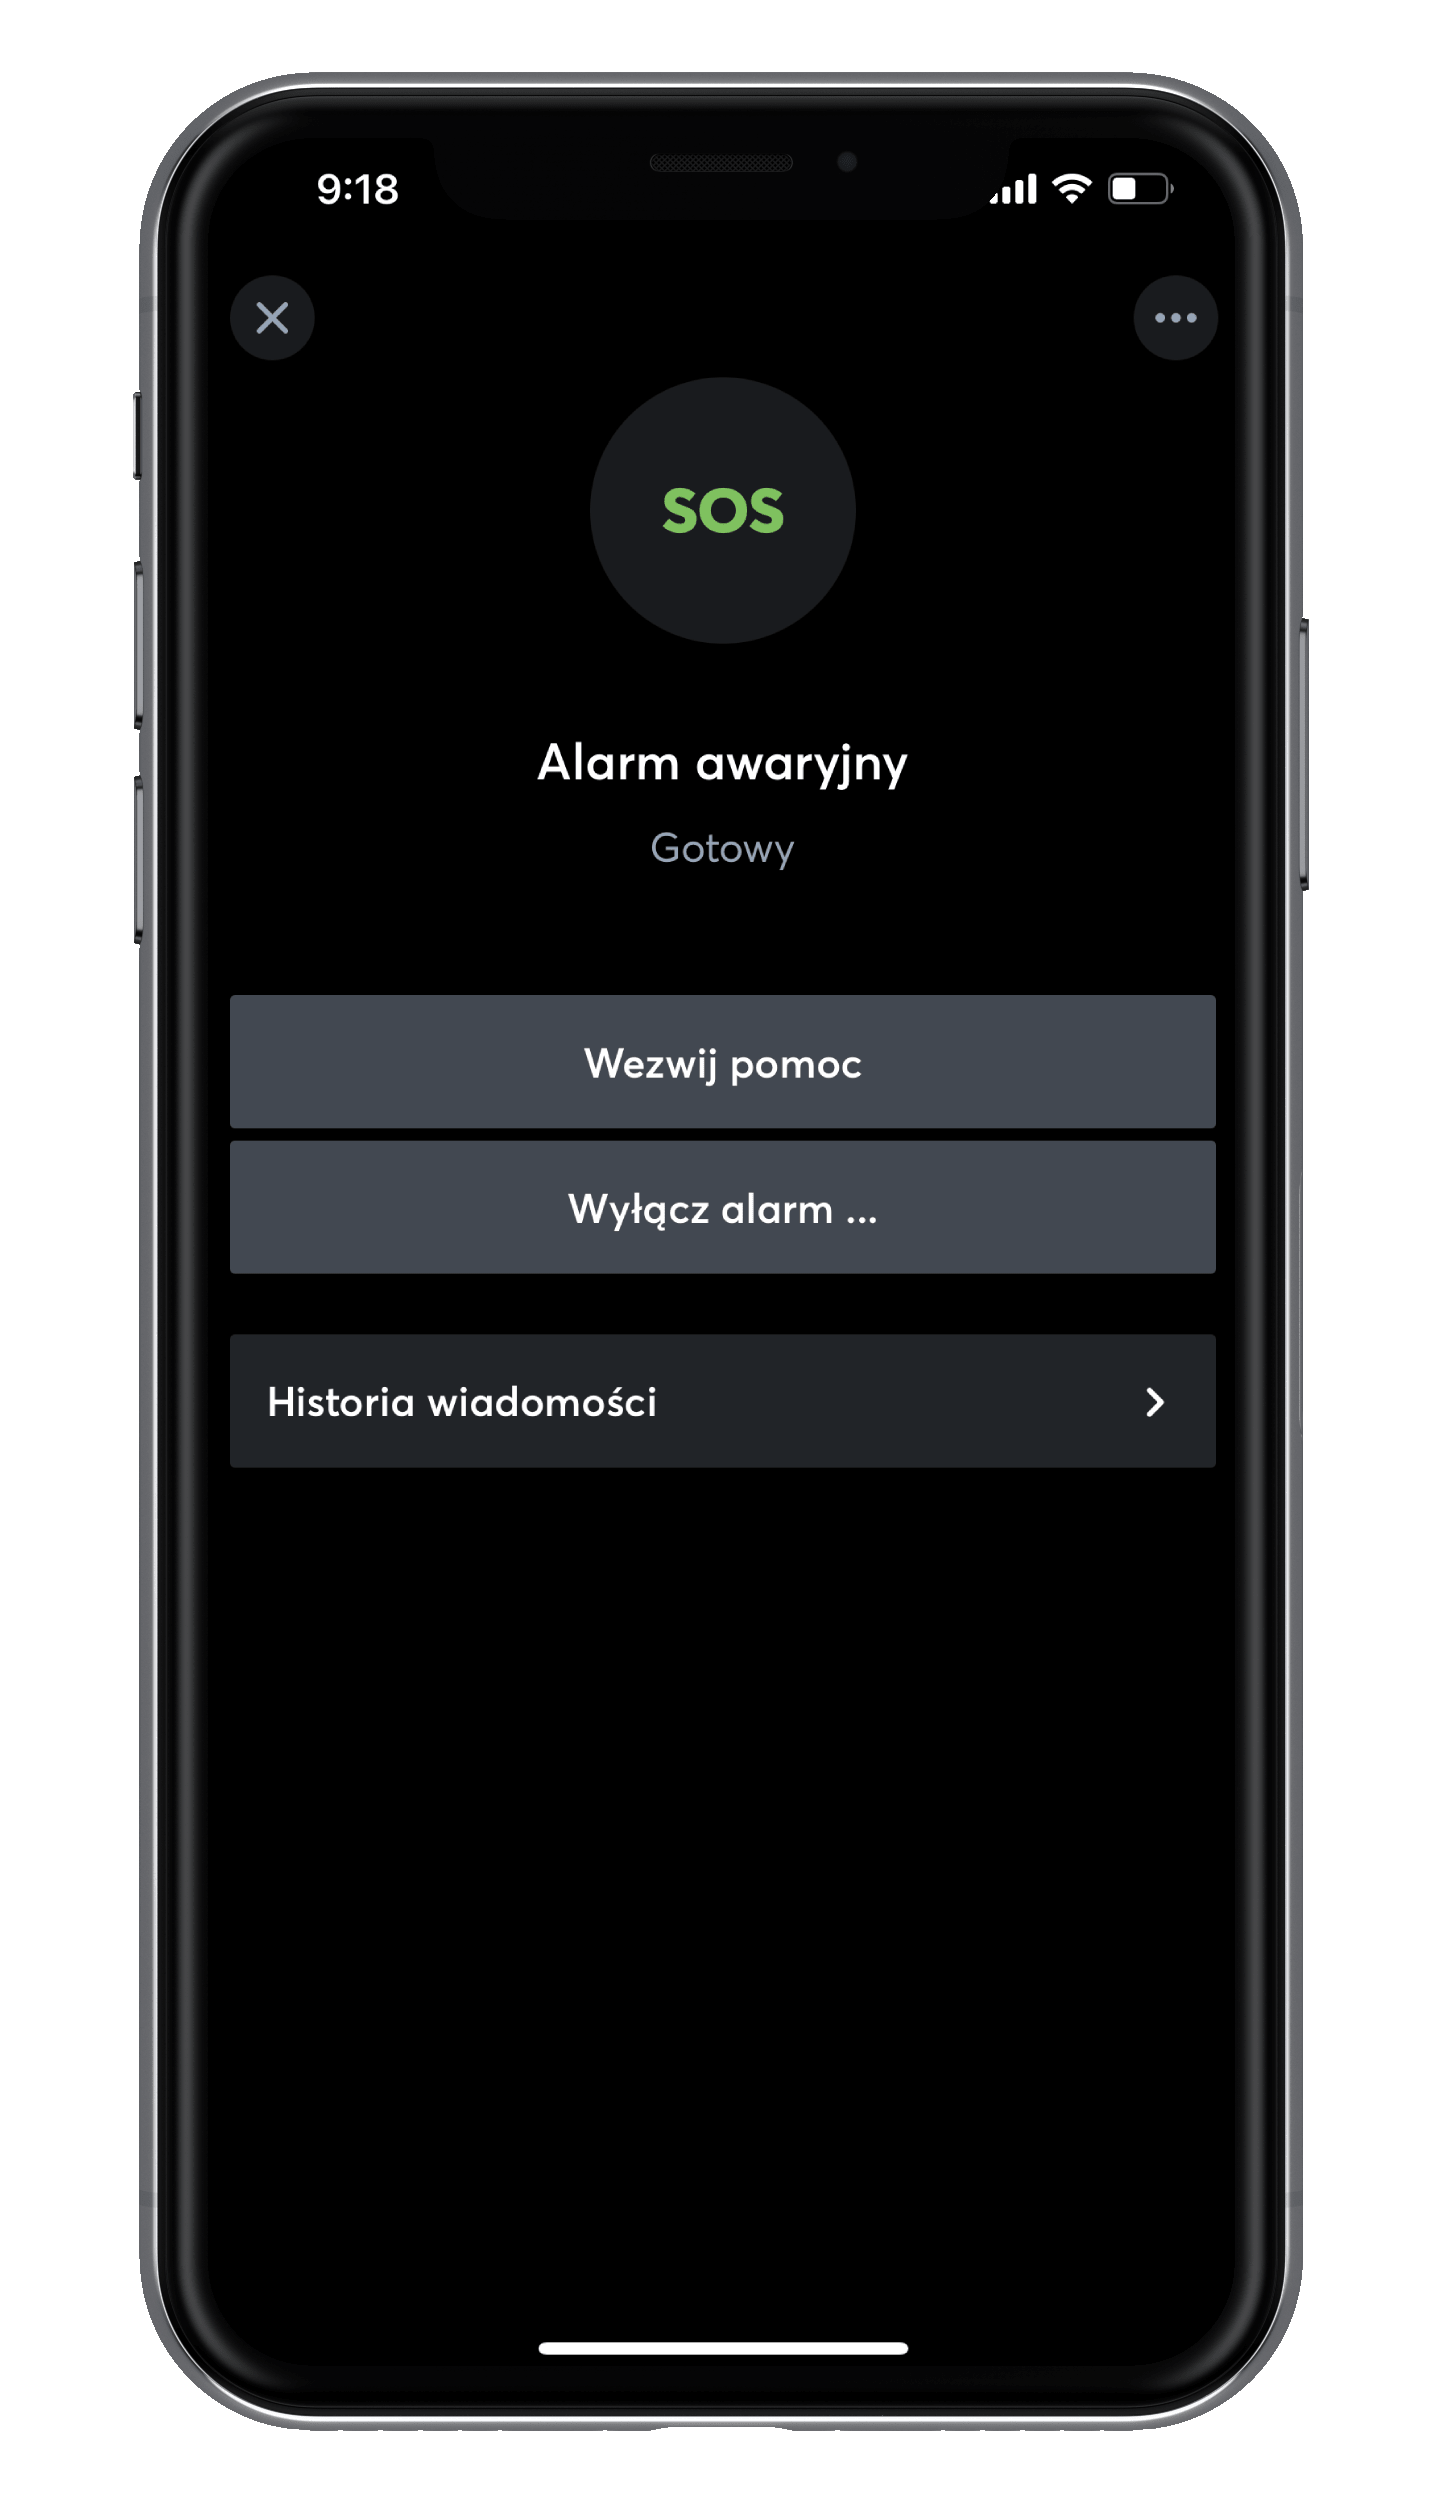 Alarm awaryjny w aplikacji Loxone